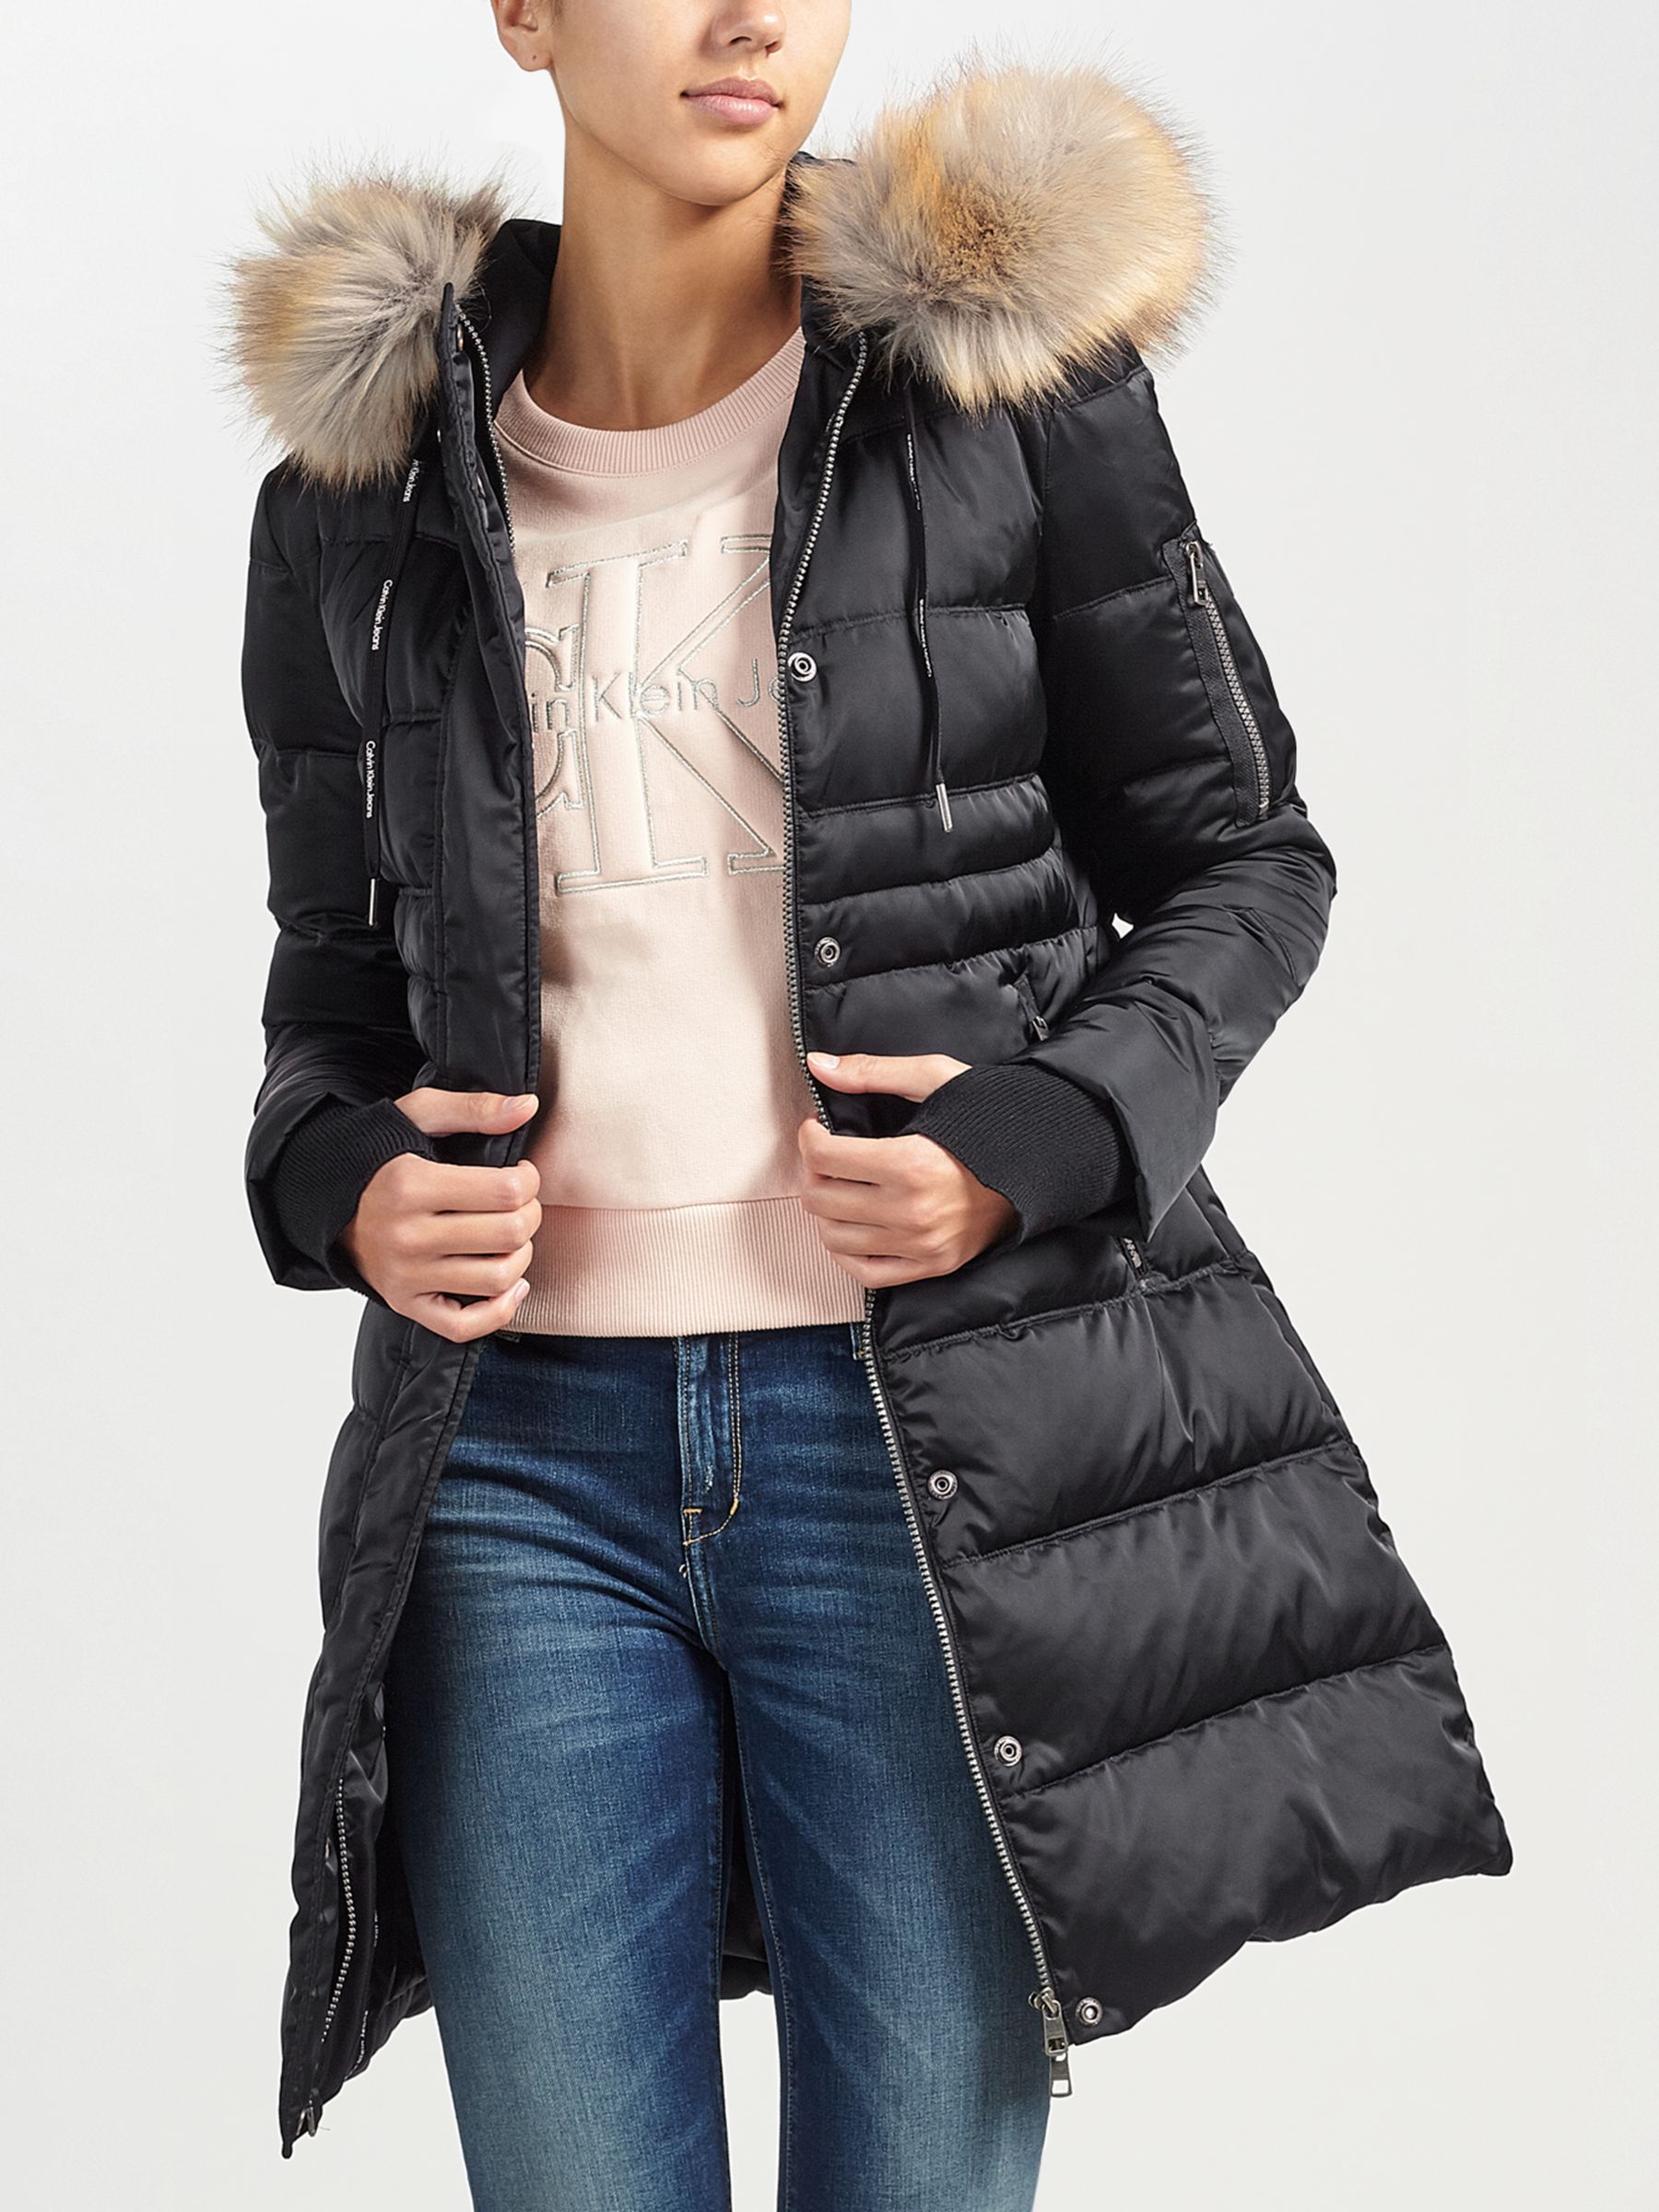 calvin klein jacket womens sale